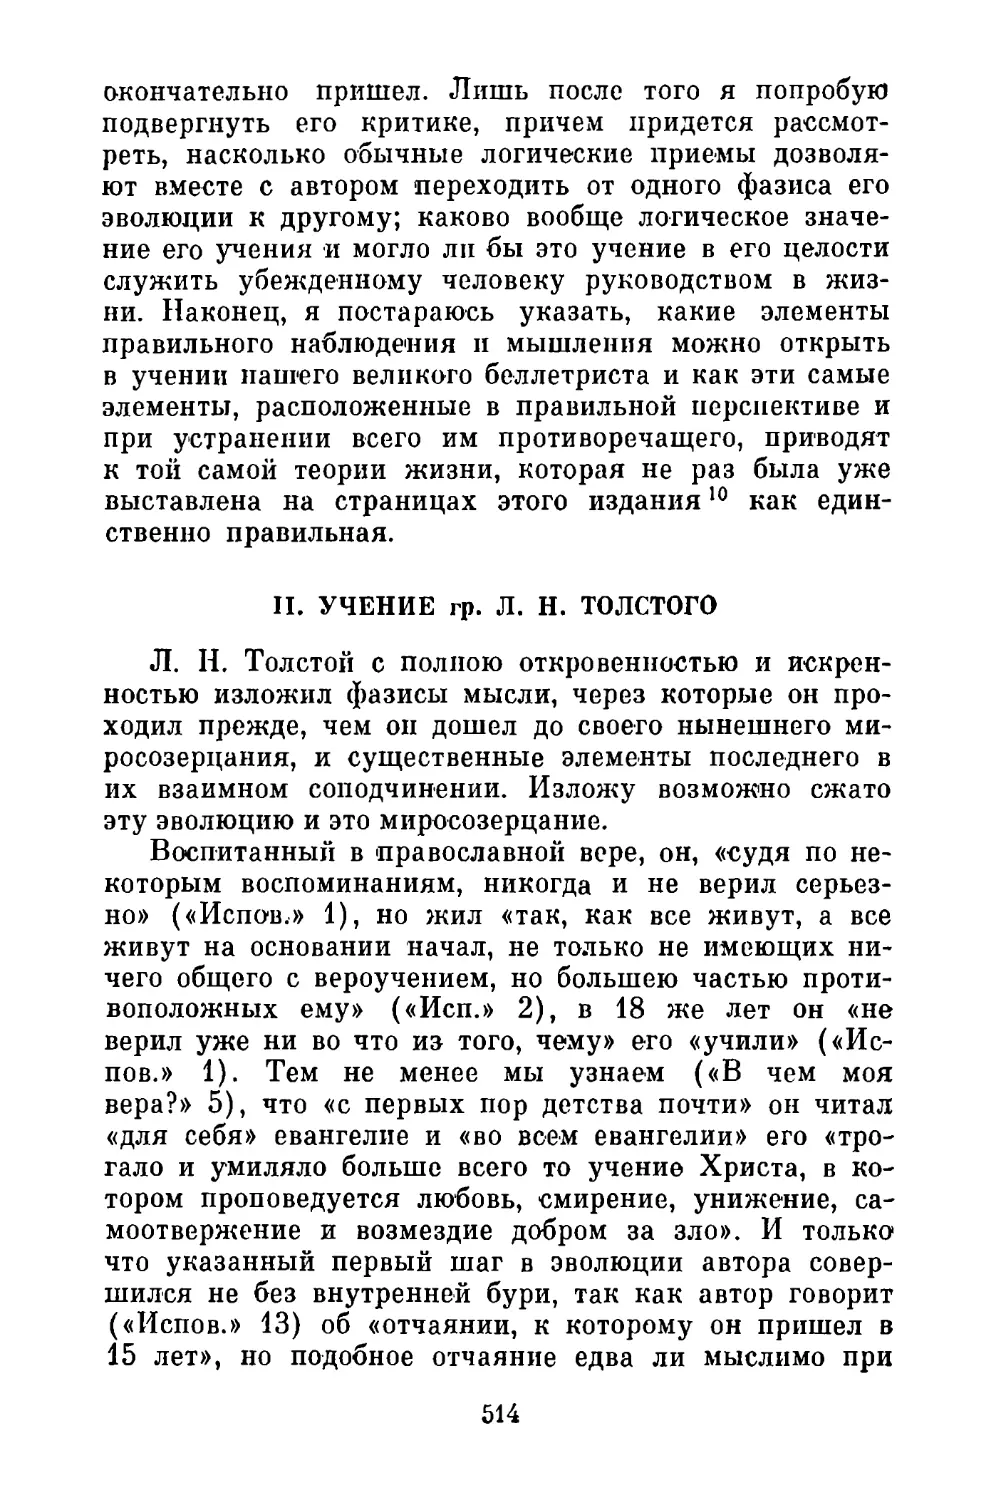 II. Учение гр. Л. Н. Толстого